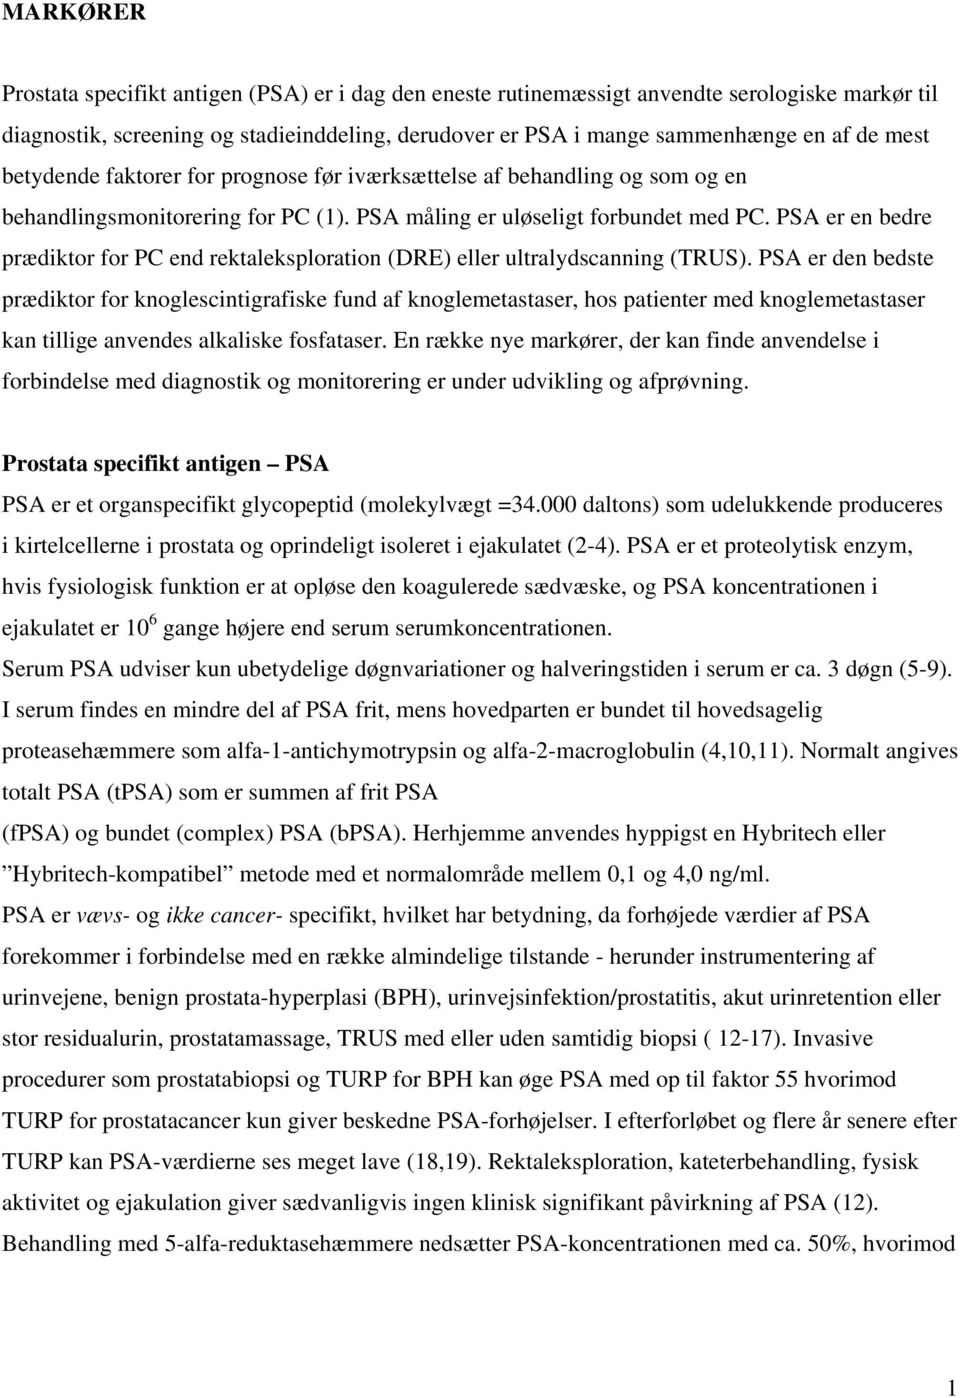 MARKØRER Prostata specifikt antigen PSA - PDF Free Download